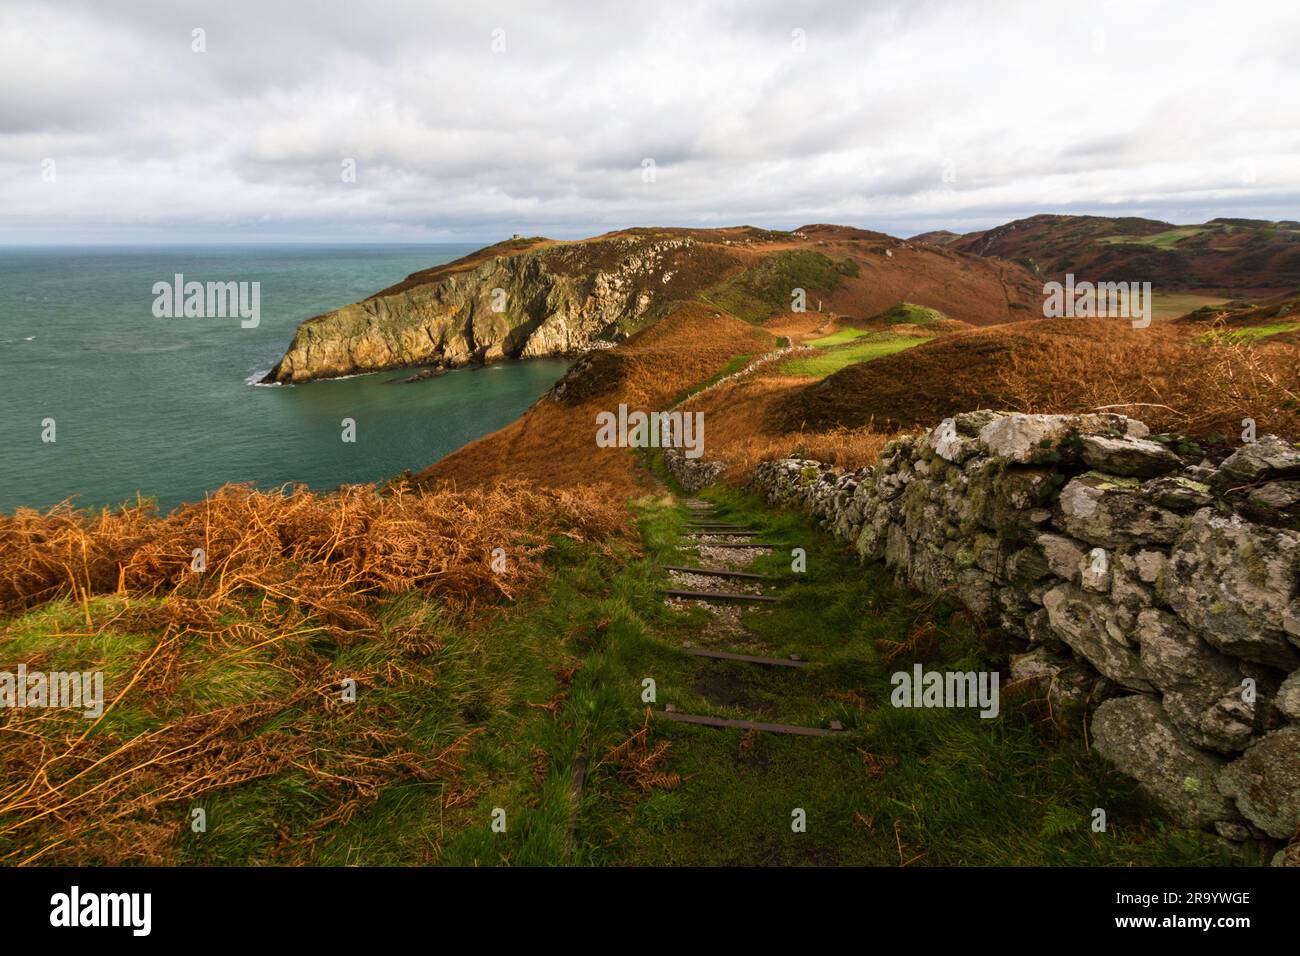 Anglesey North Coastal Path, pays de Galles. Chemin d'automne ou d'automne avec des restes de mur de pierre sèche, et de la mer à distance, paysage, grand angle Banque D'Images